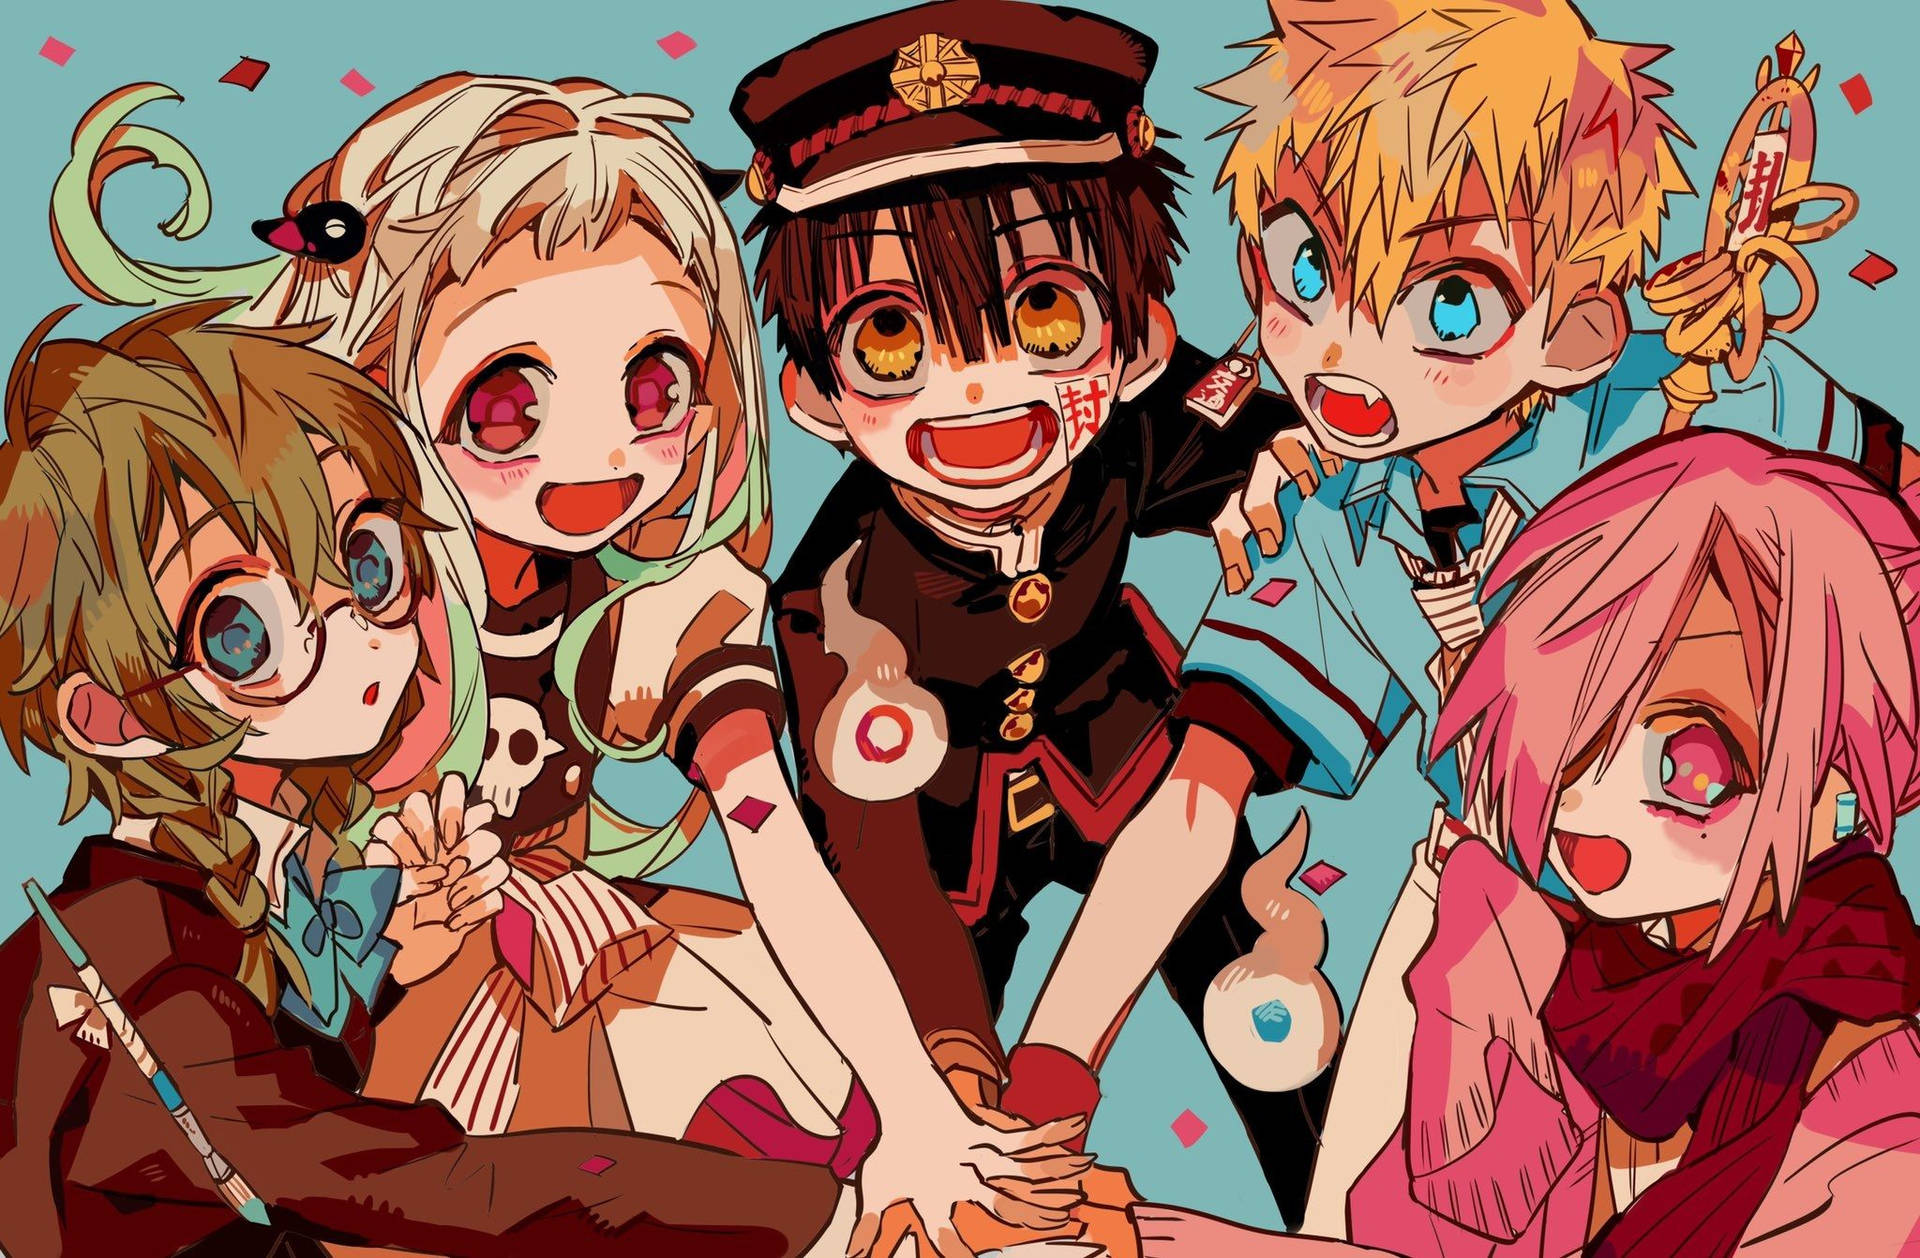 Einegruppe Von Anime-charakteren Mit Pinkem Haar Und Blauen Augen. Wallpaper